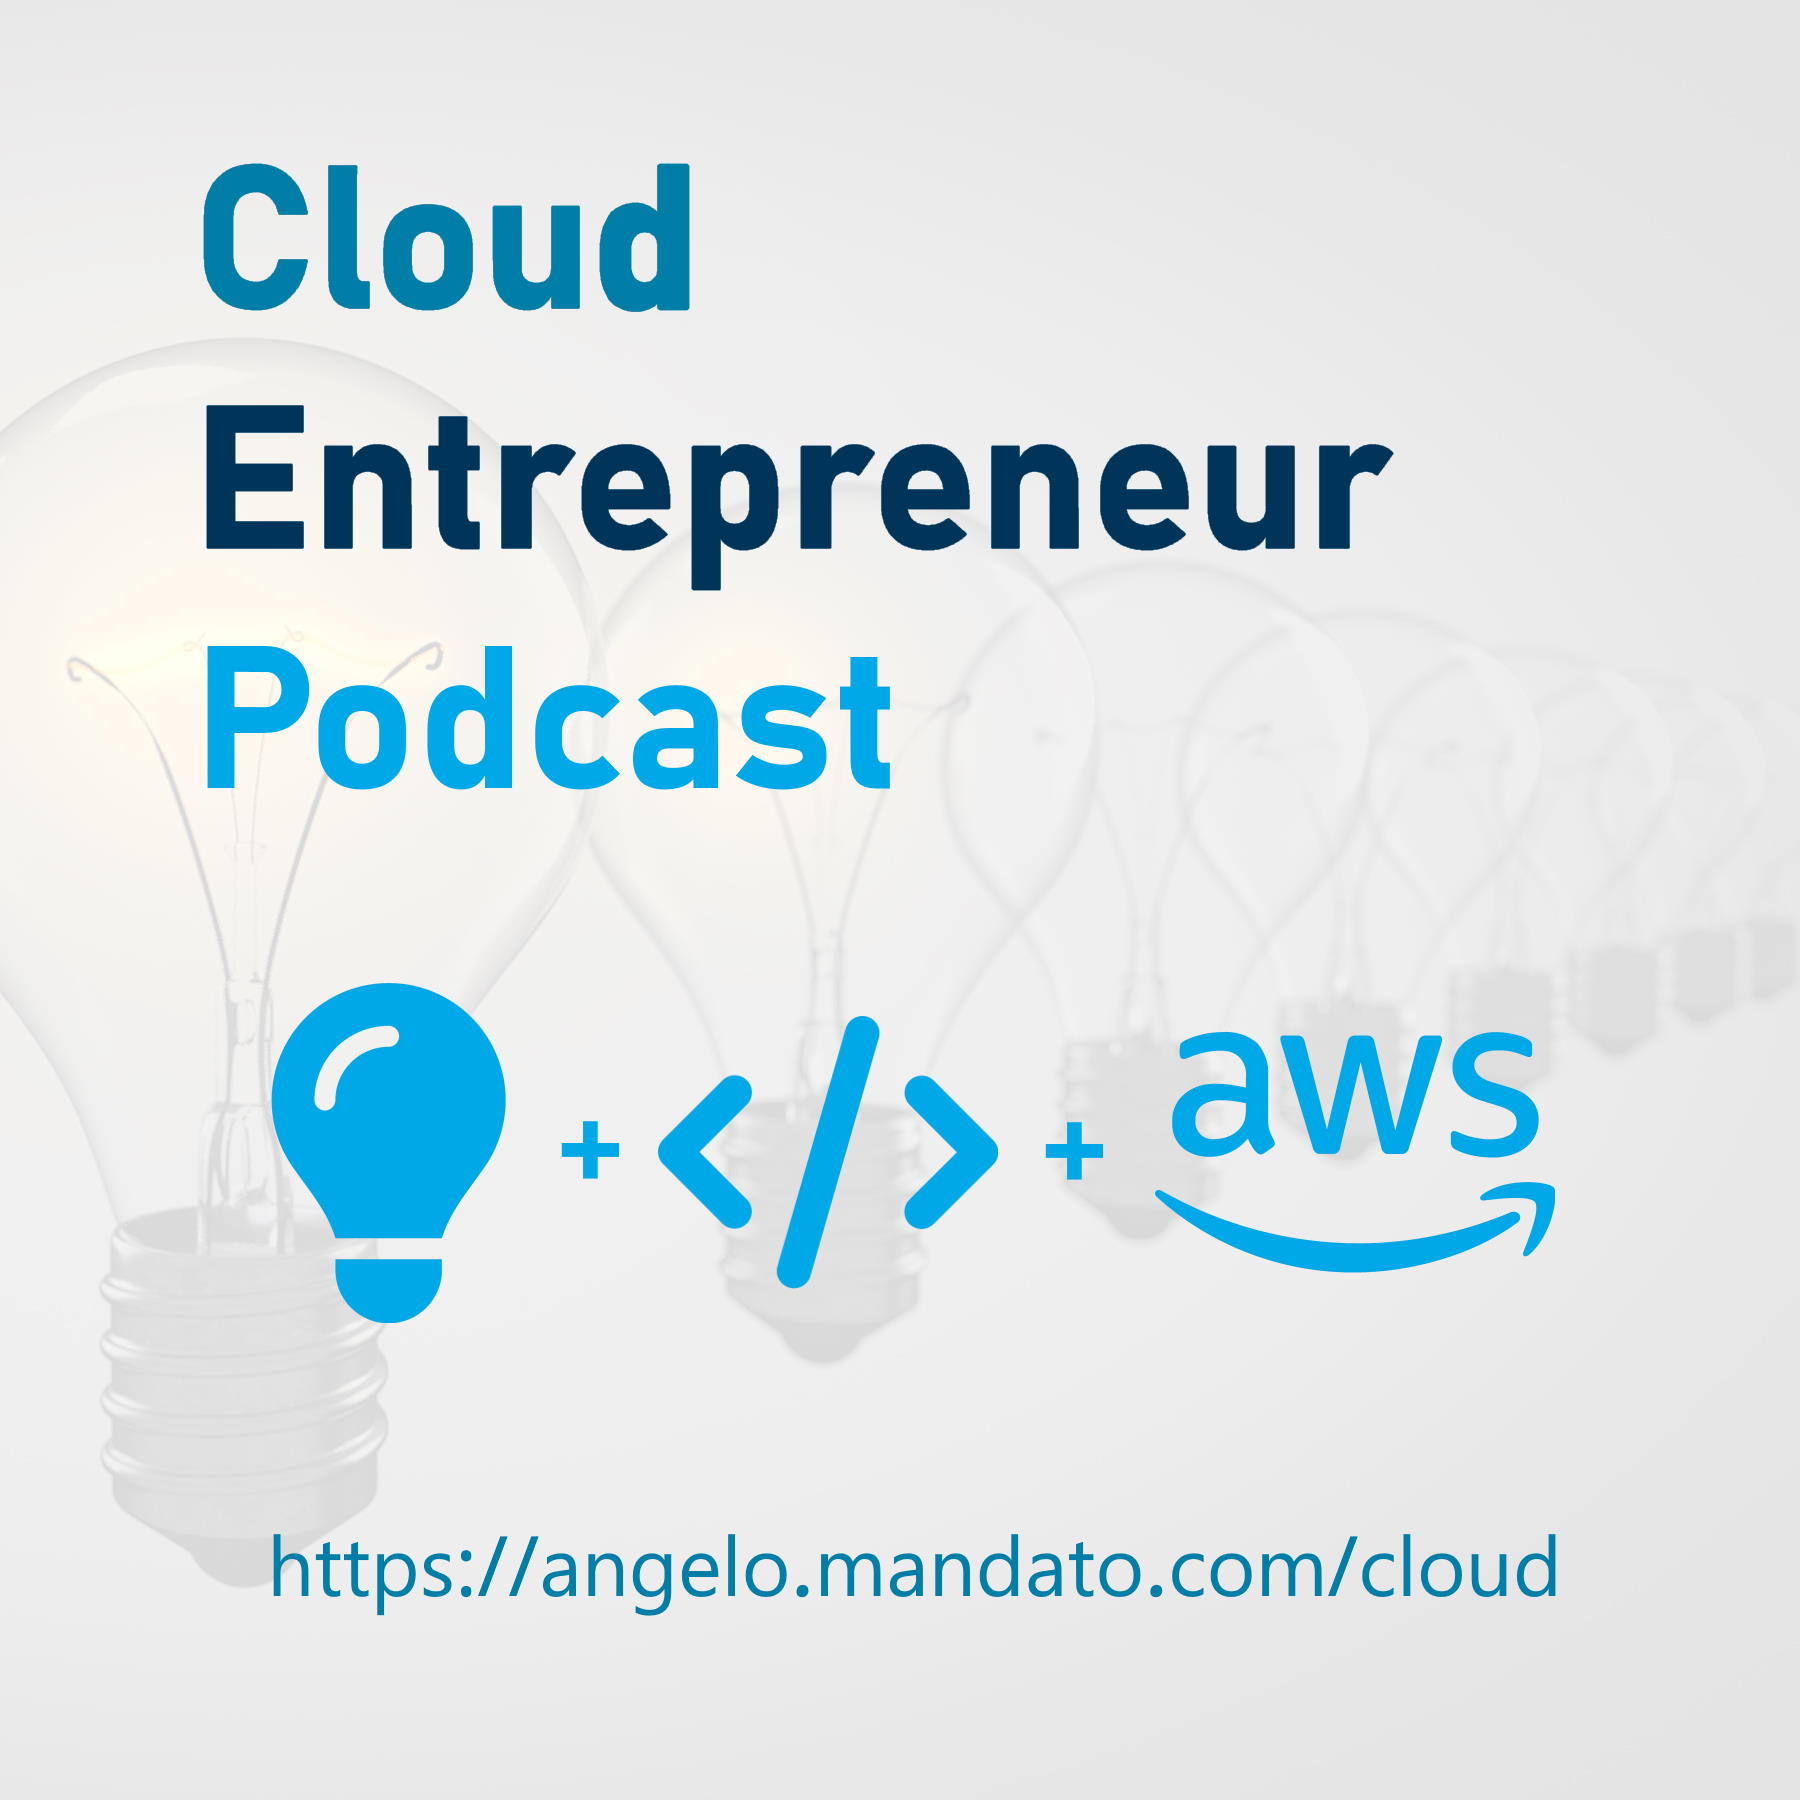 Cloud Entrepreneur Podcast